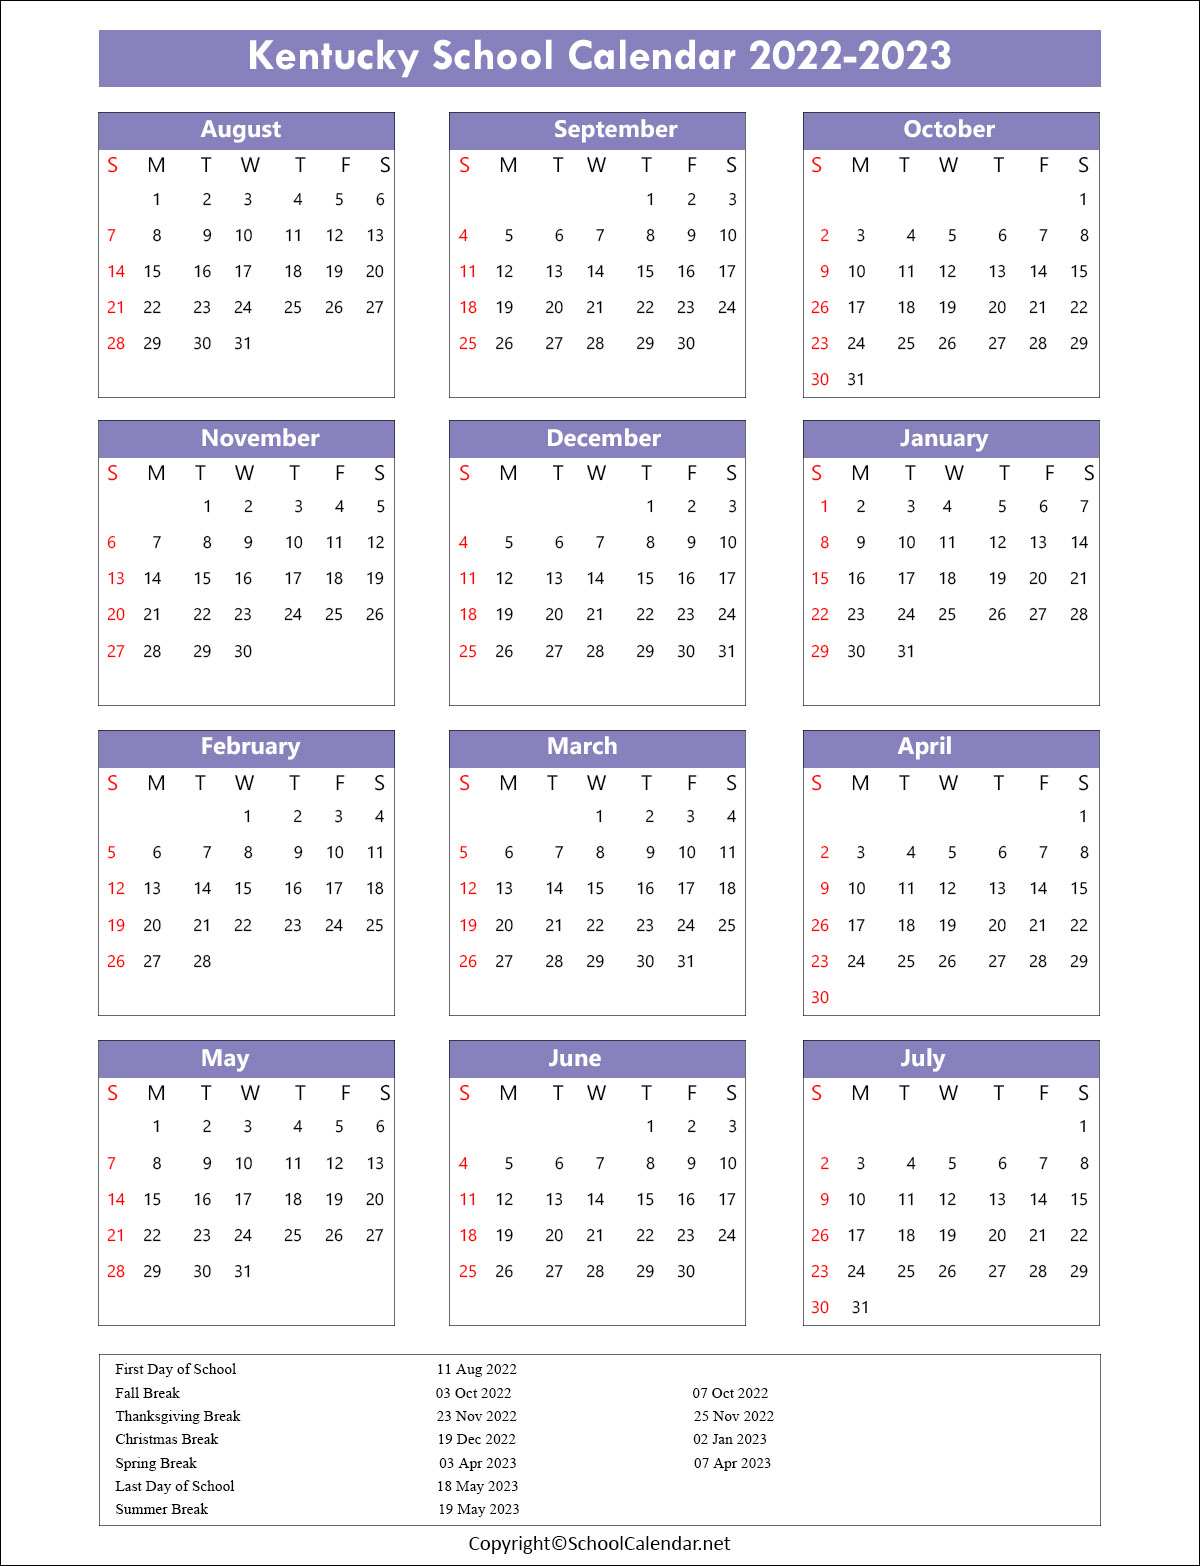 Kentucky School Calendar 2022